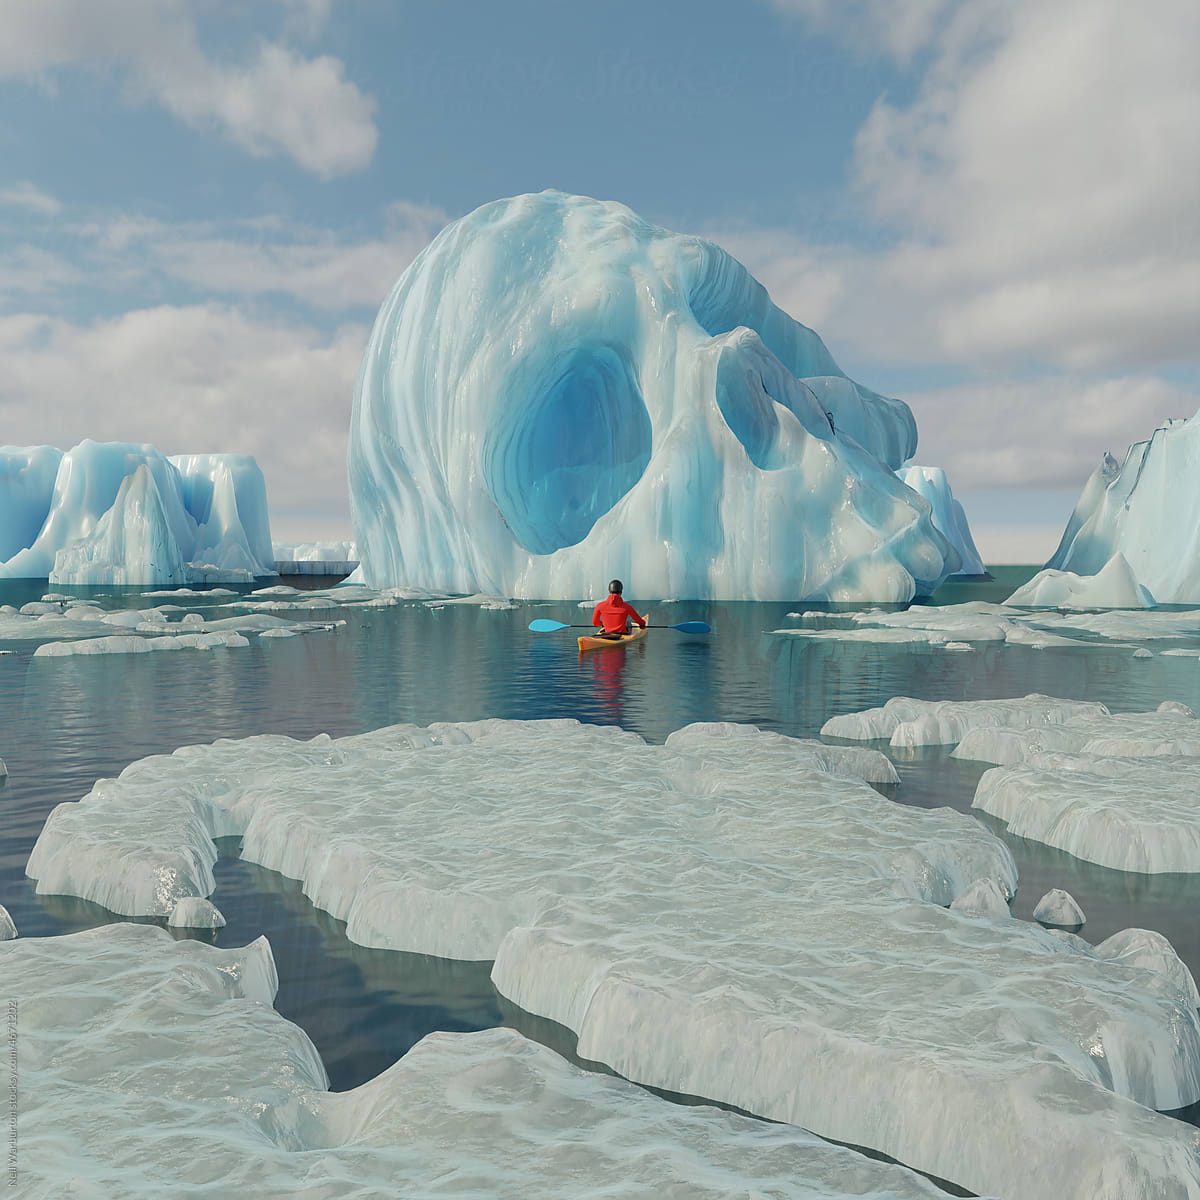 Kyaking through dying icebergs